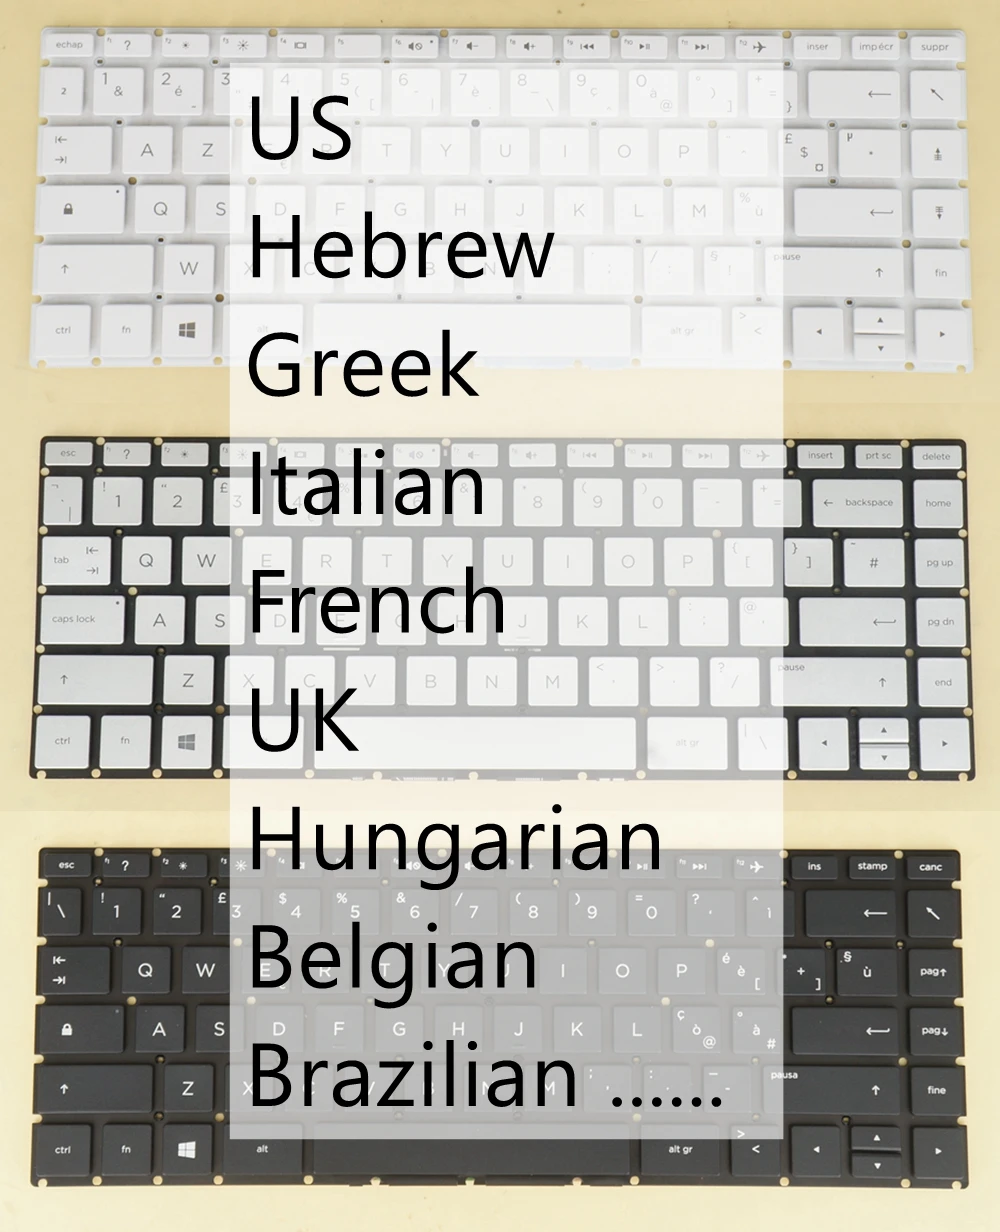 

UK US Belgian BR Portuguese Keyboard For HP 14g-br000 14g-br100 14m-ba100, Pavilion x360 14-ba000 14-bk000 14-bk100 14m-ba000